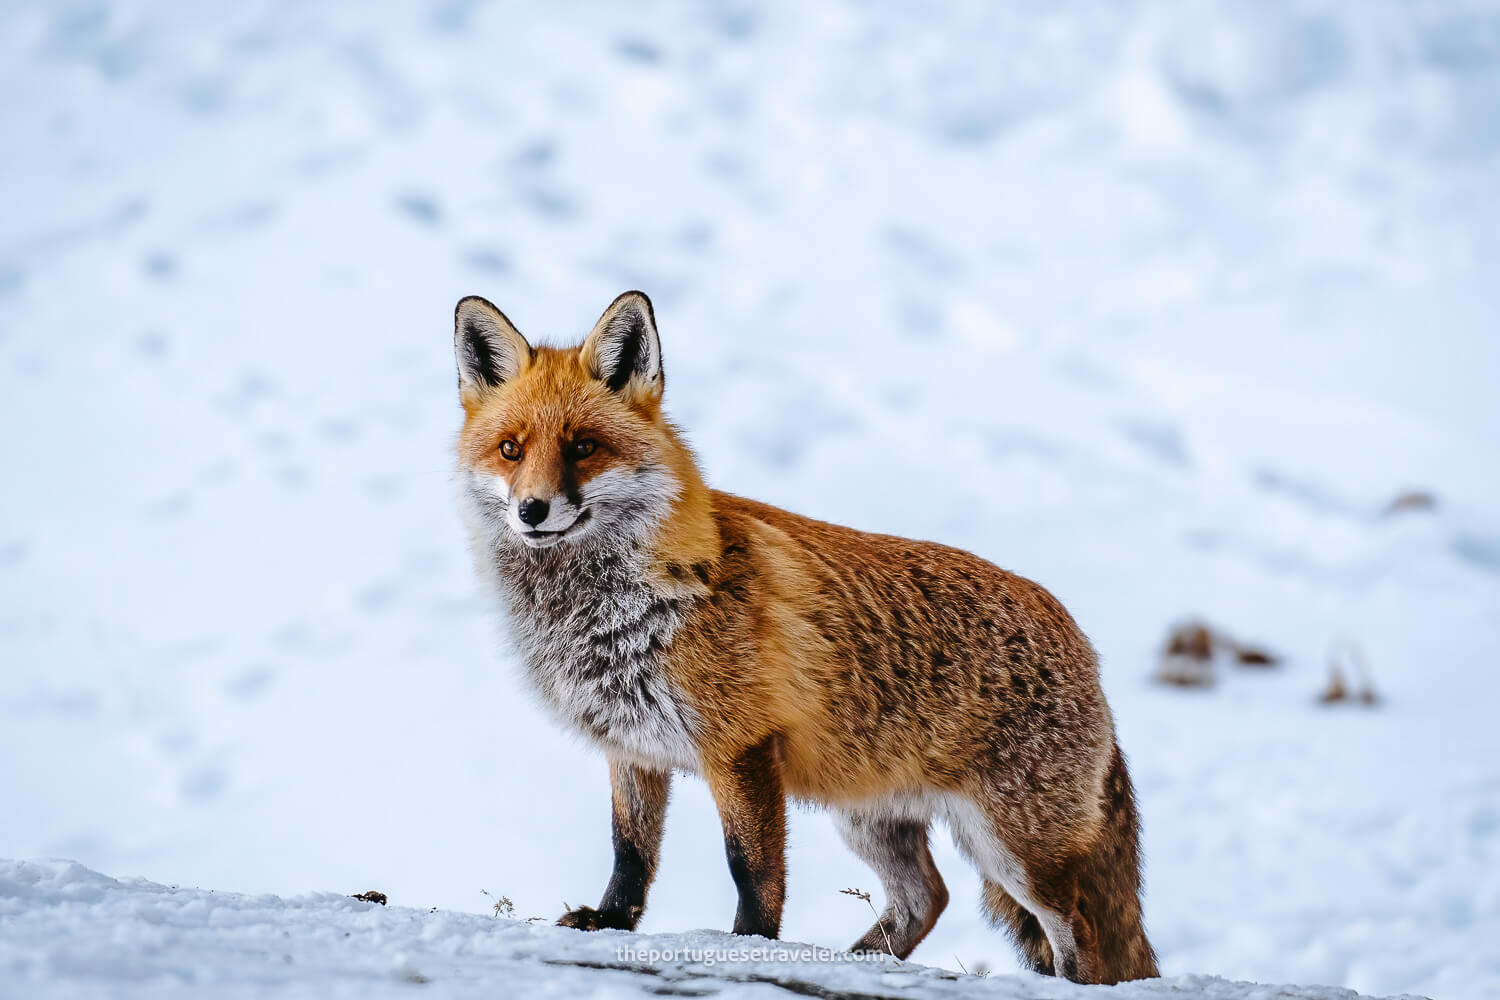 A nice fox at Muttseehütte